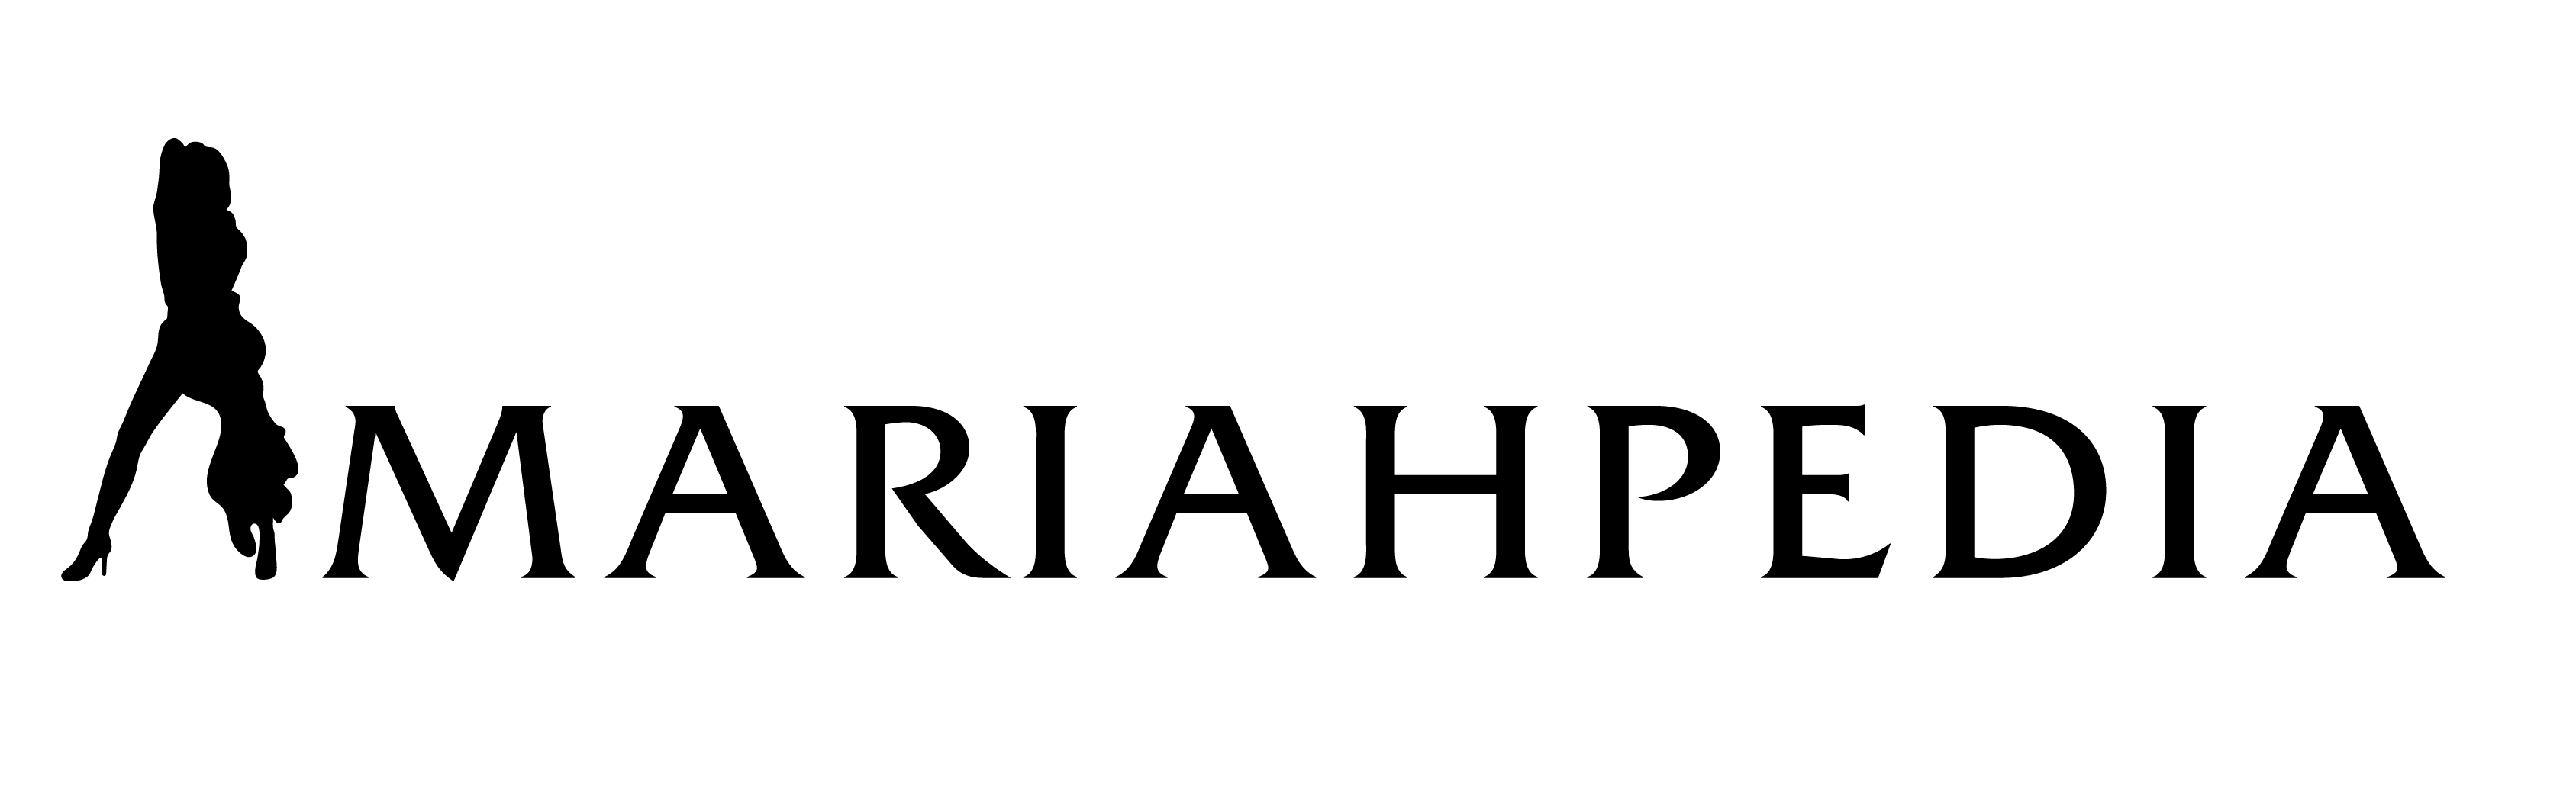 Mariahpedia Logo